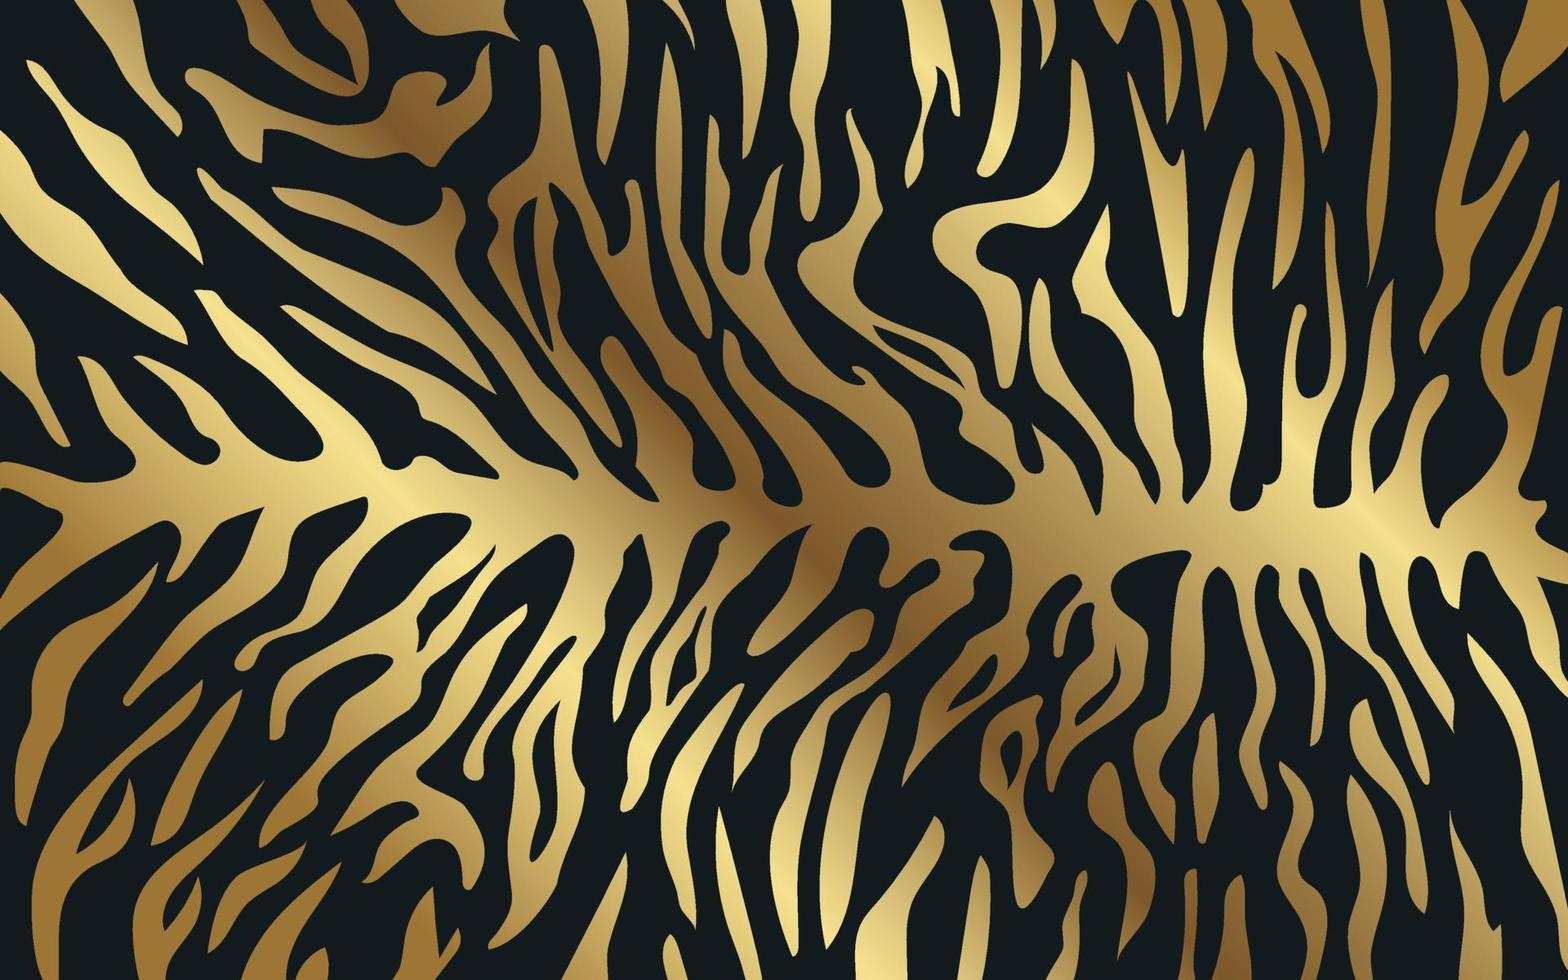 listras na pele de um tigre, um padrão de listras na pele de um predador, padrão dourado em um fundo escuro. vetor